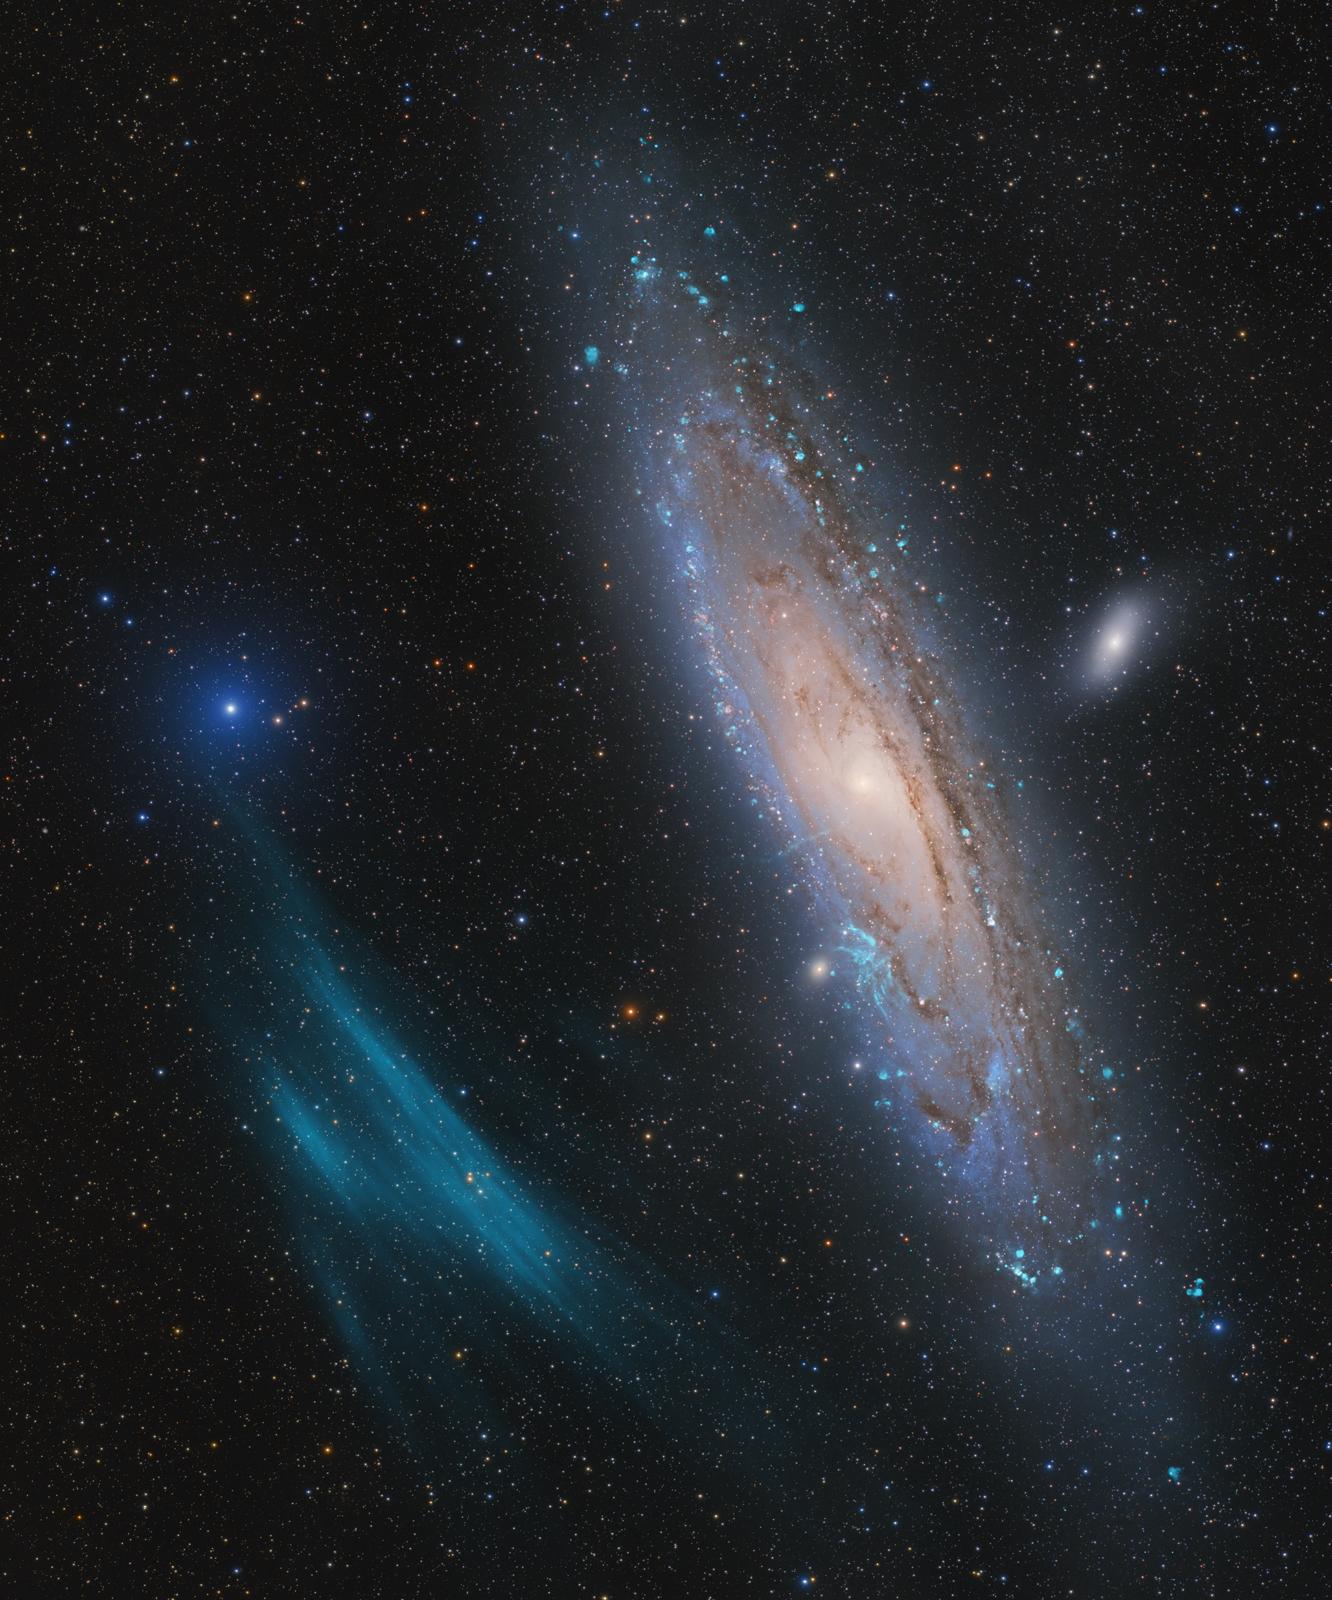 仙女座星系旁边有巨大等离子弧的空间图像